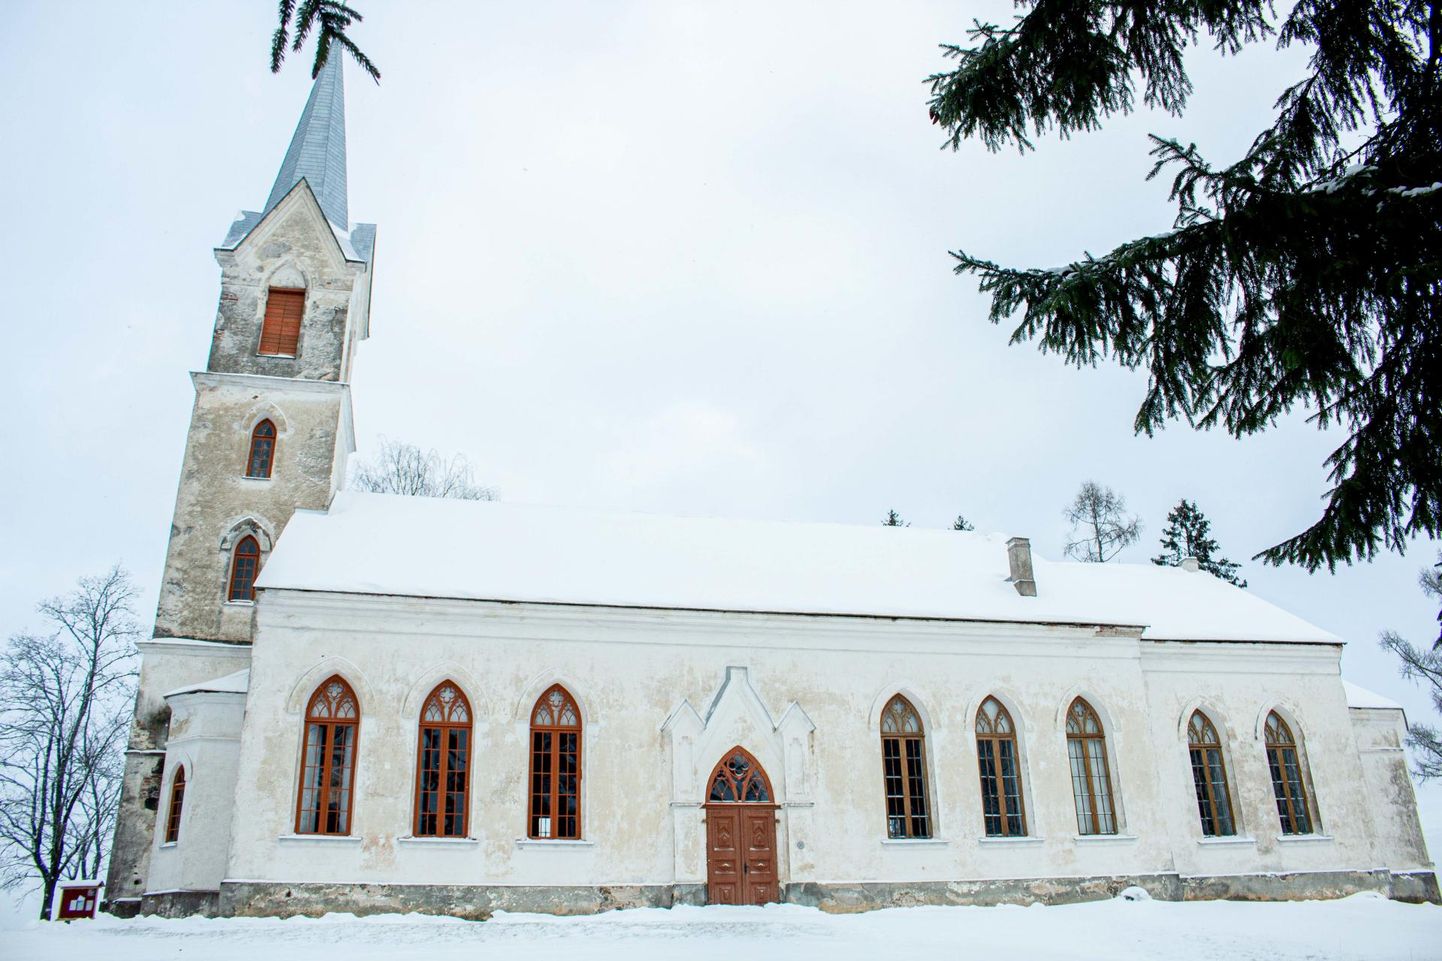 Aknarohkel Hargla kirikul sai mullu restaureeritud kolm lõunakülje akent (uksest vasemal) ning kaks käärkambri akent. Järge ootab veel 14 akent. tiit loim